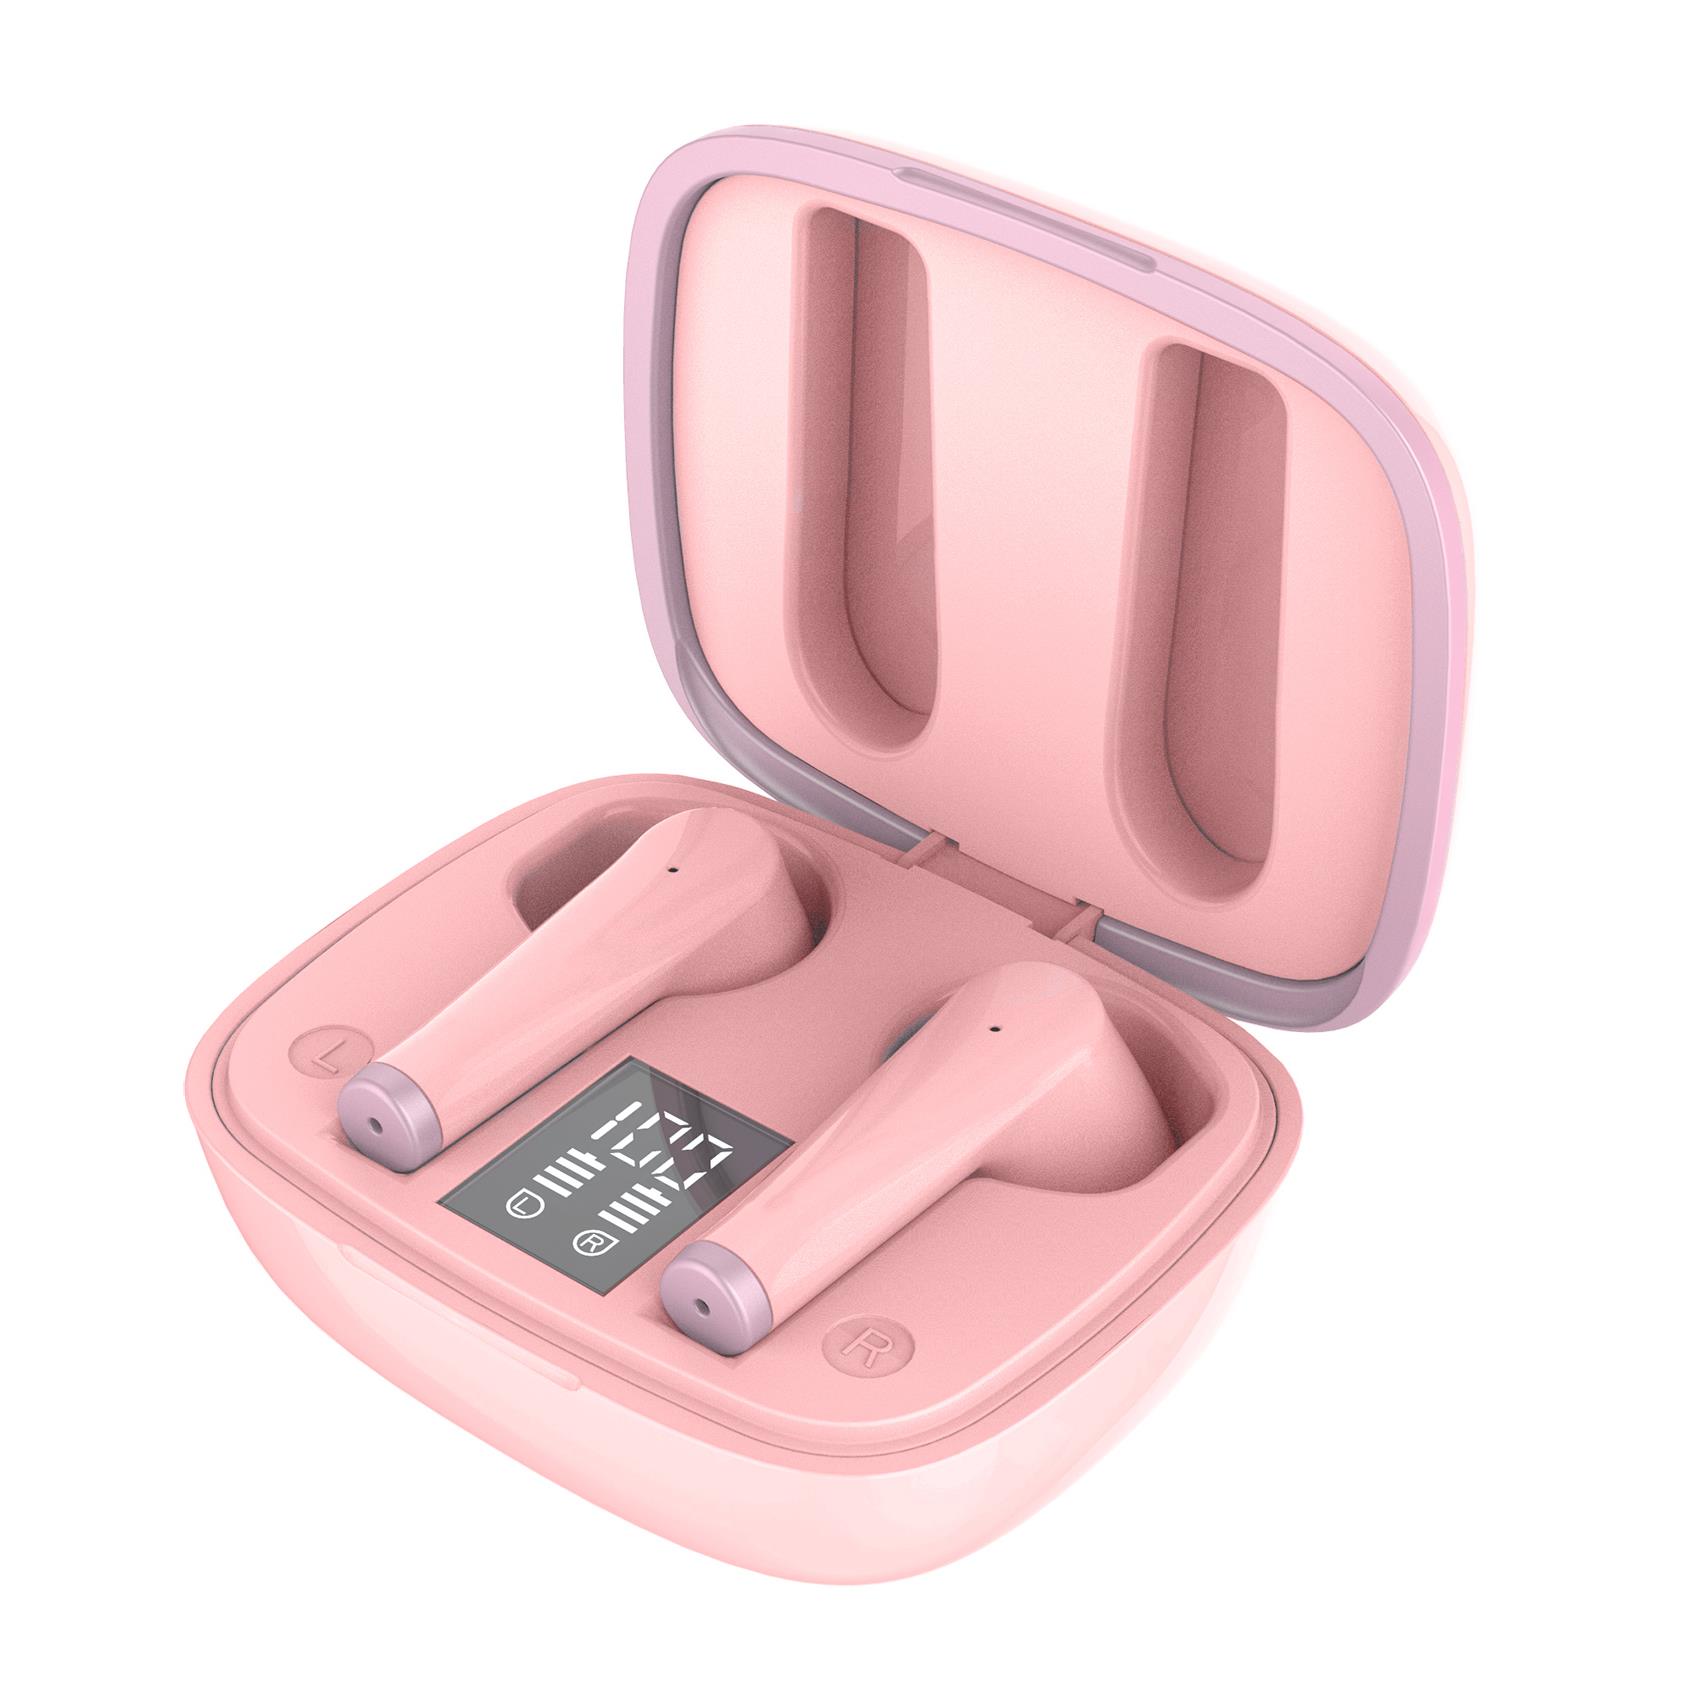 Auricolare Bluetooth Celly FUZ 1 true wireless pink FUZ1BP